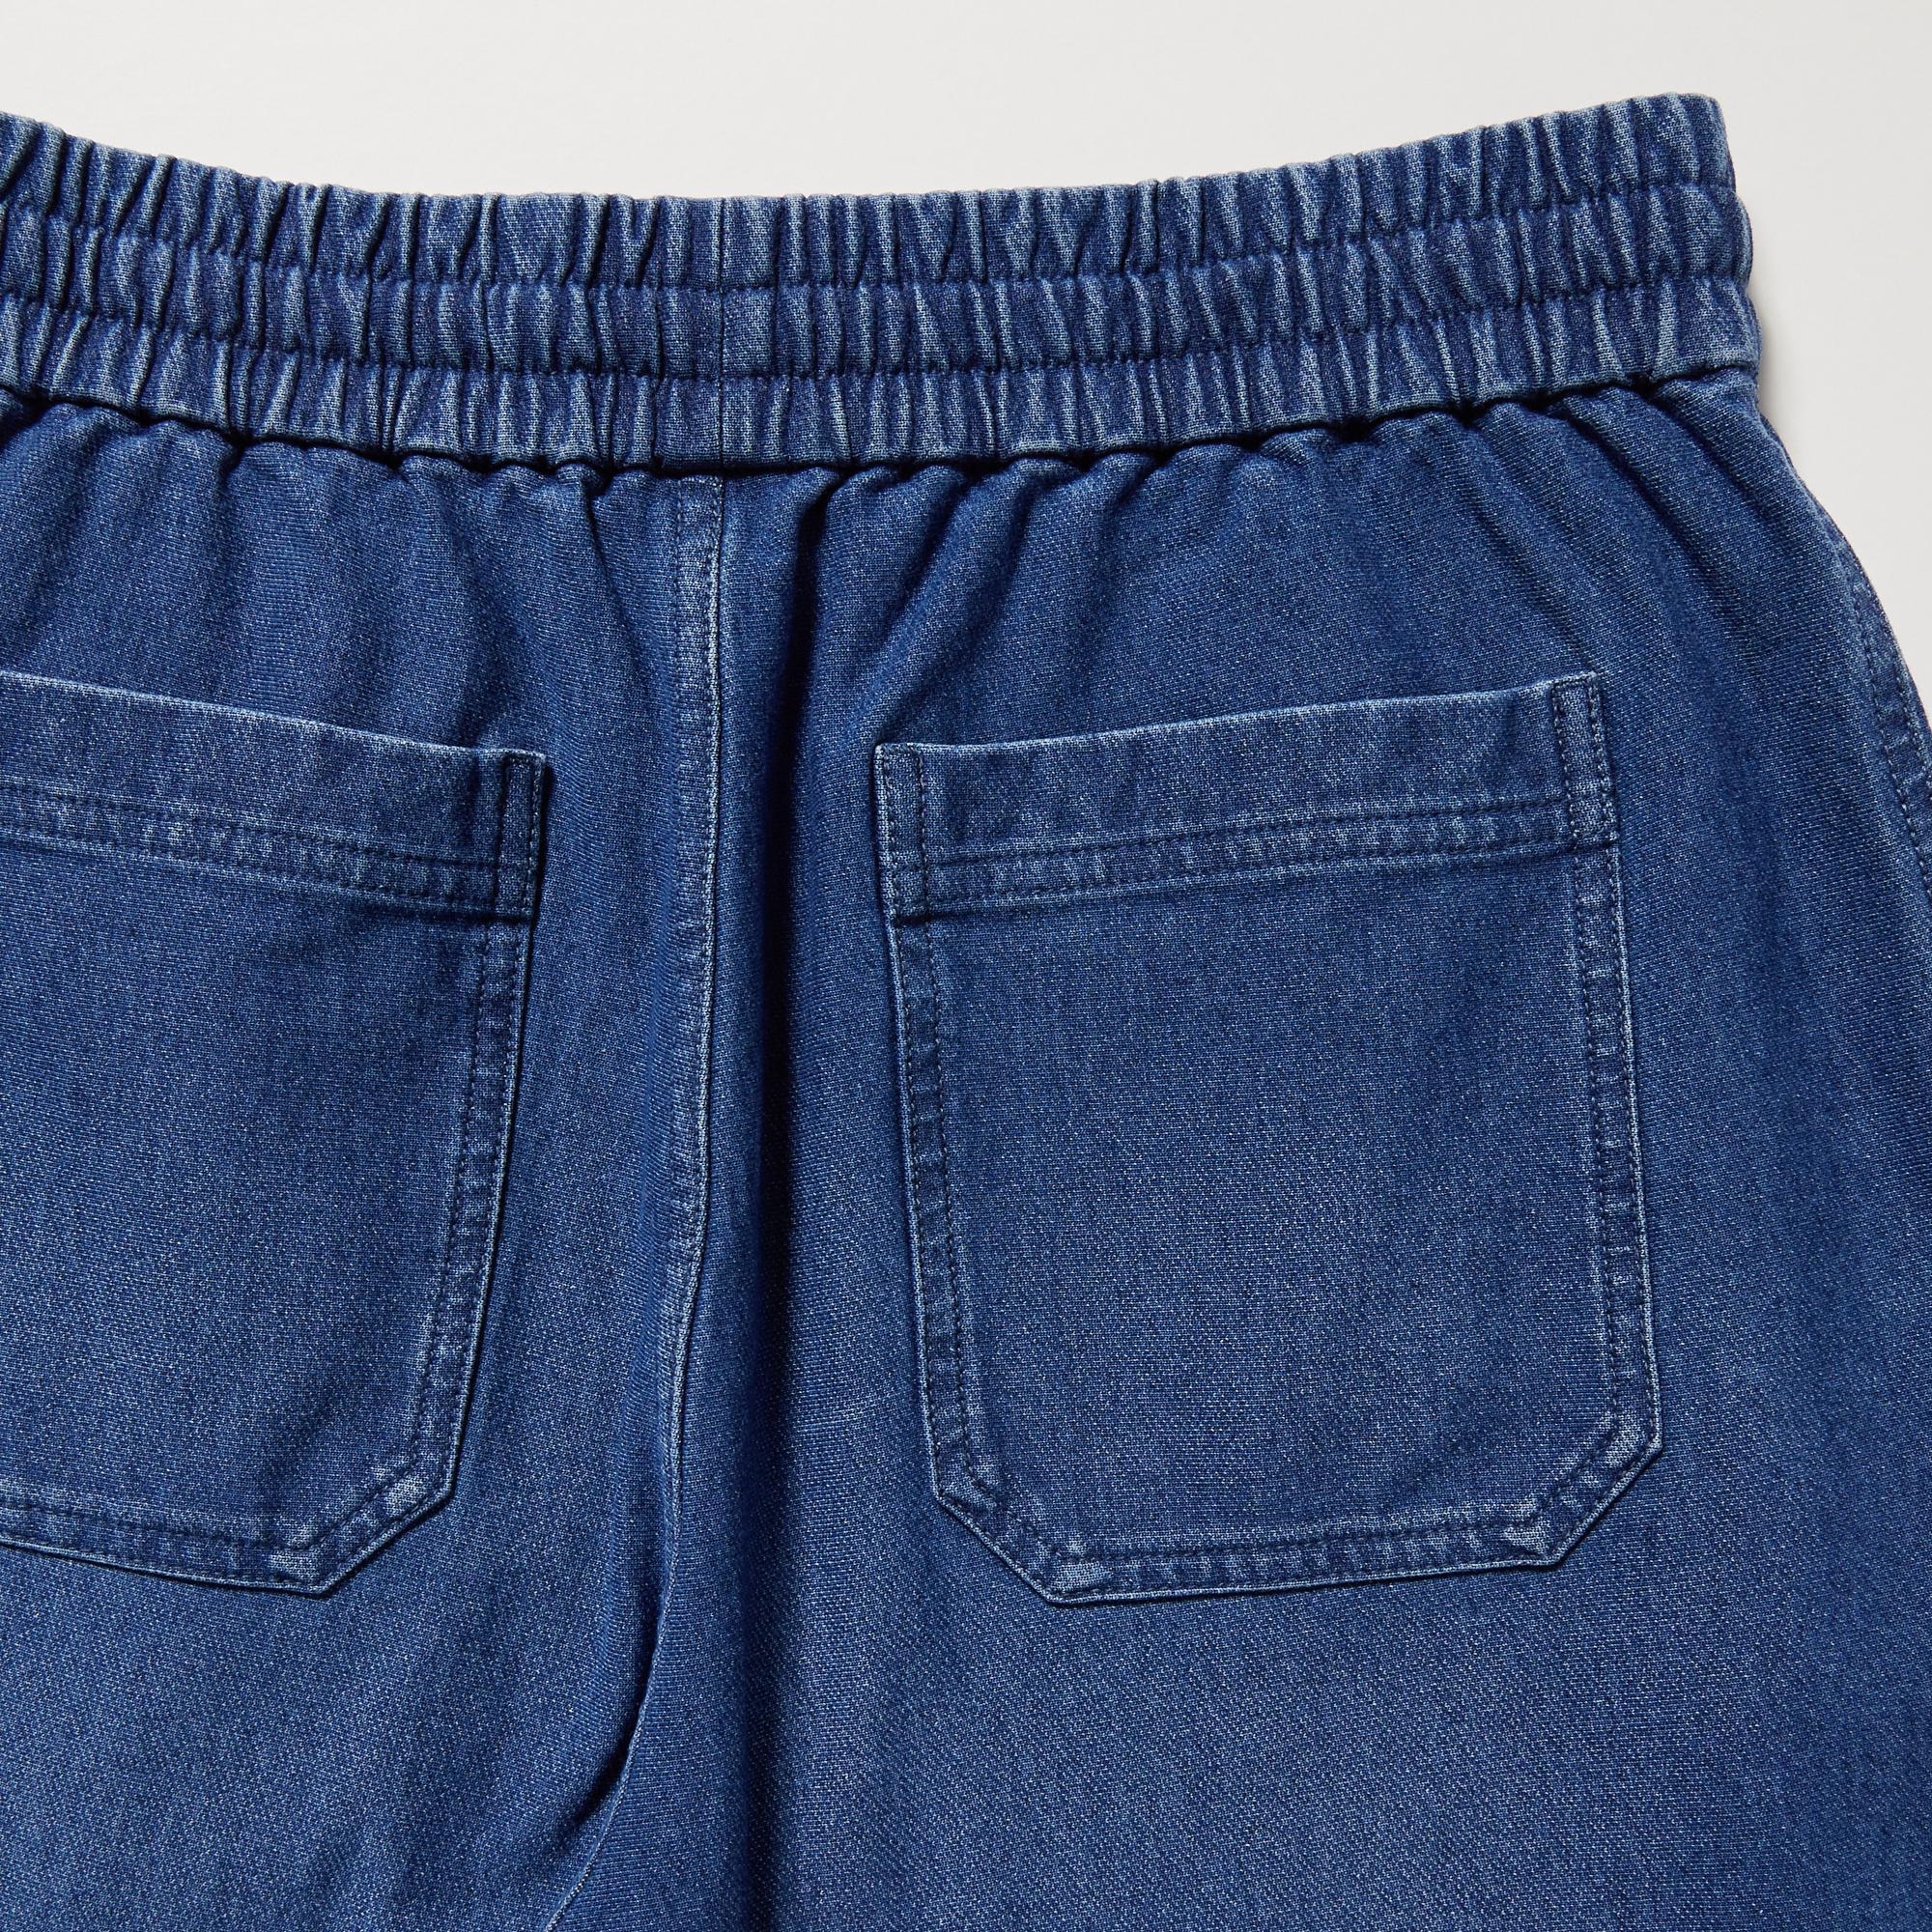 Sequin Ripped Jeans Women Streetwear Hole Zipper Fringe Jeans Pants Summer  Casual Loose Denim Trousers